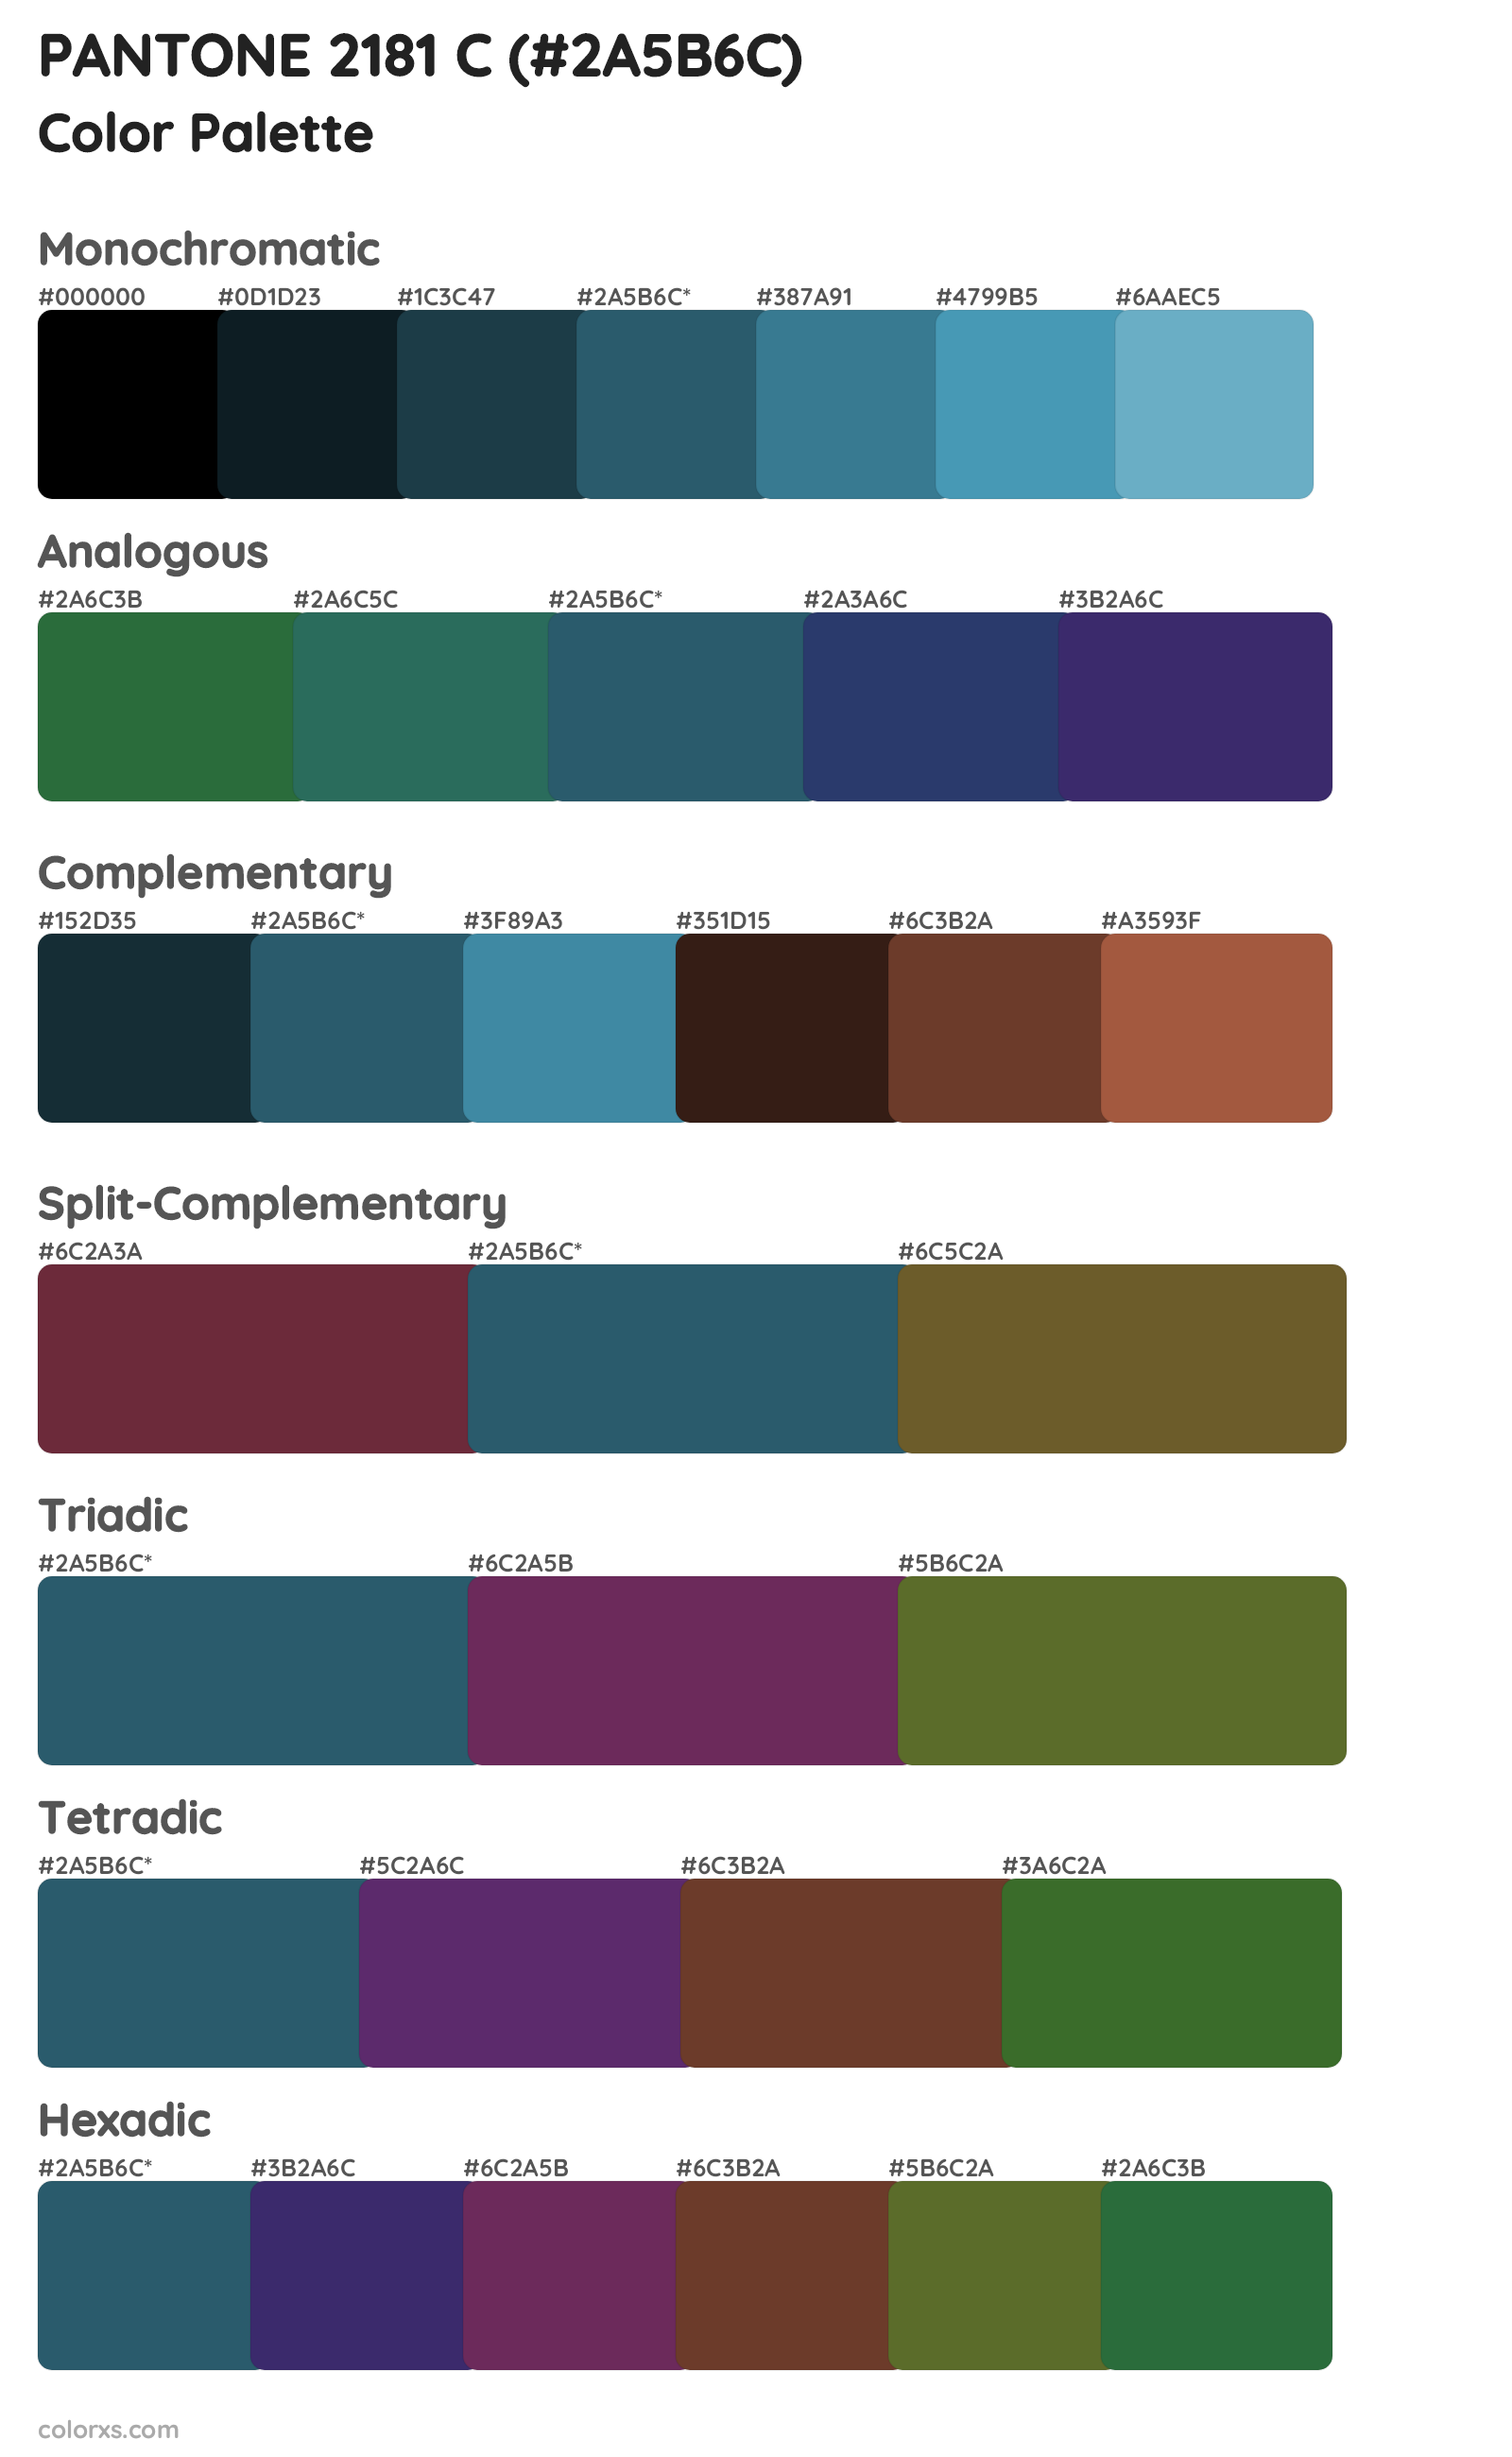 PANTONE 2181 C Color Scheme Palettes